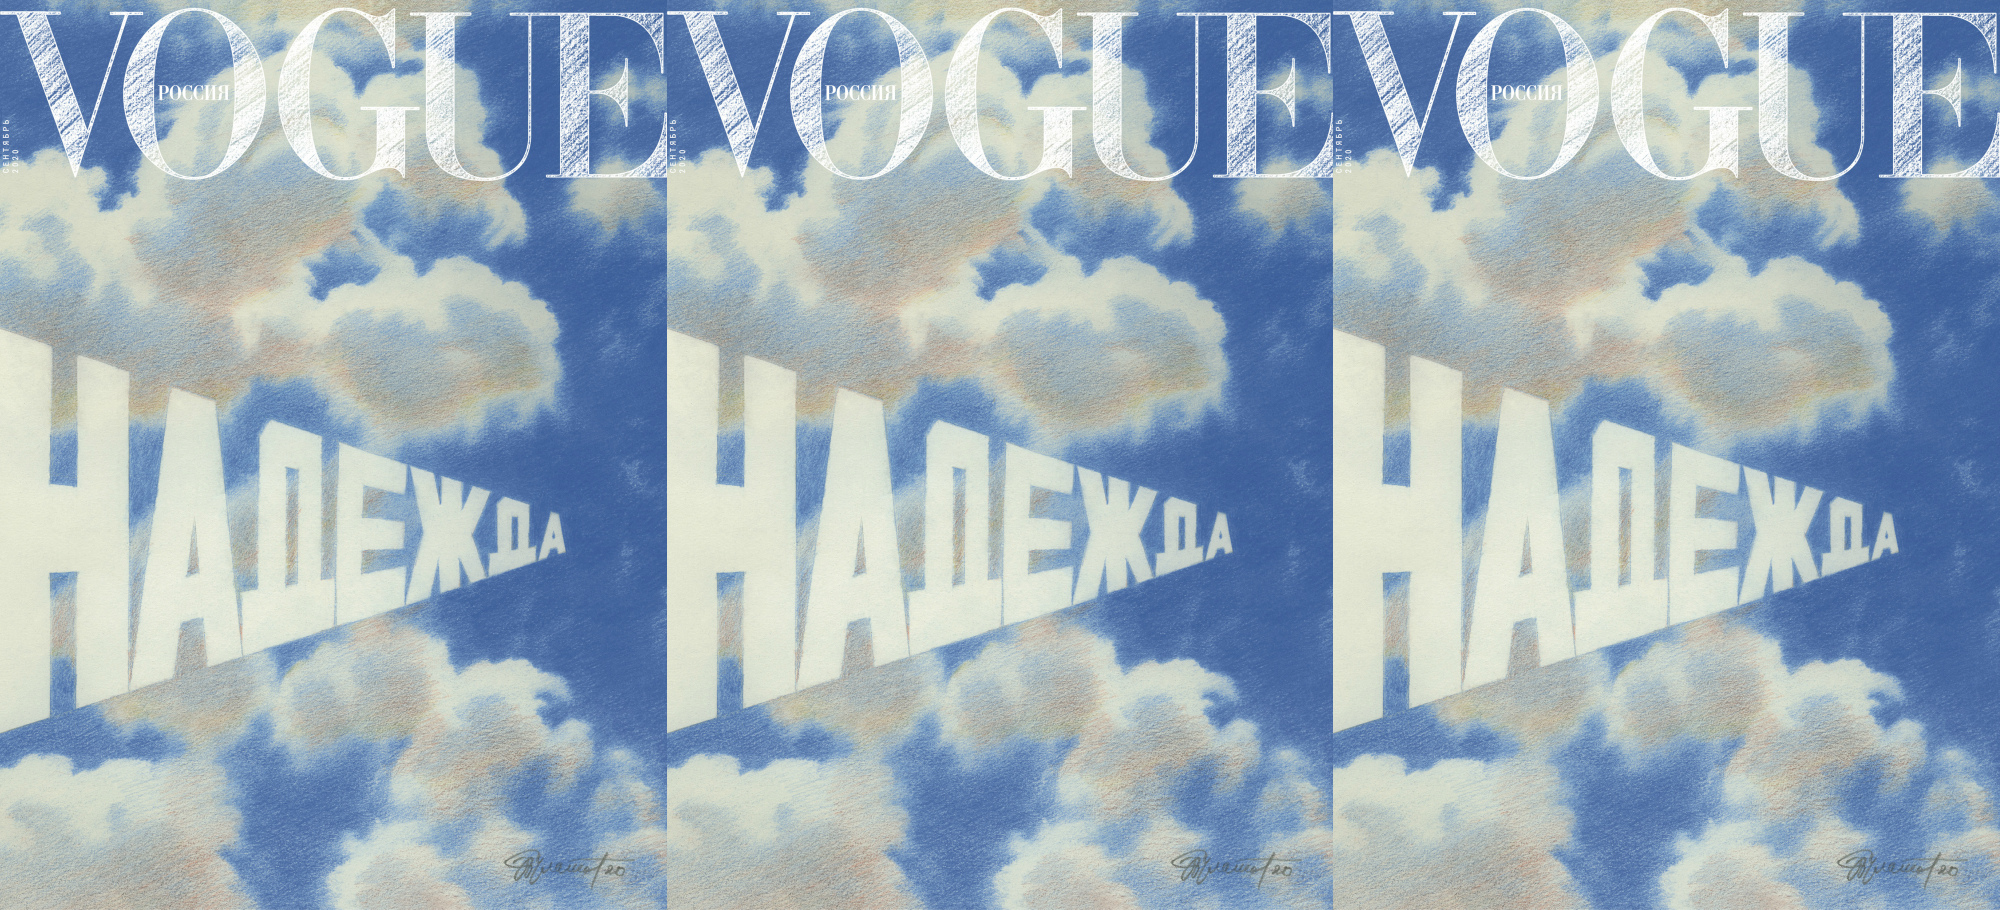 Художник Эрик Булатов нарисовал «Надежду» специально для нового выпуска российского Vogue 